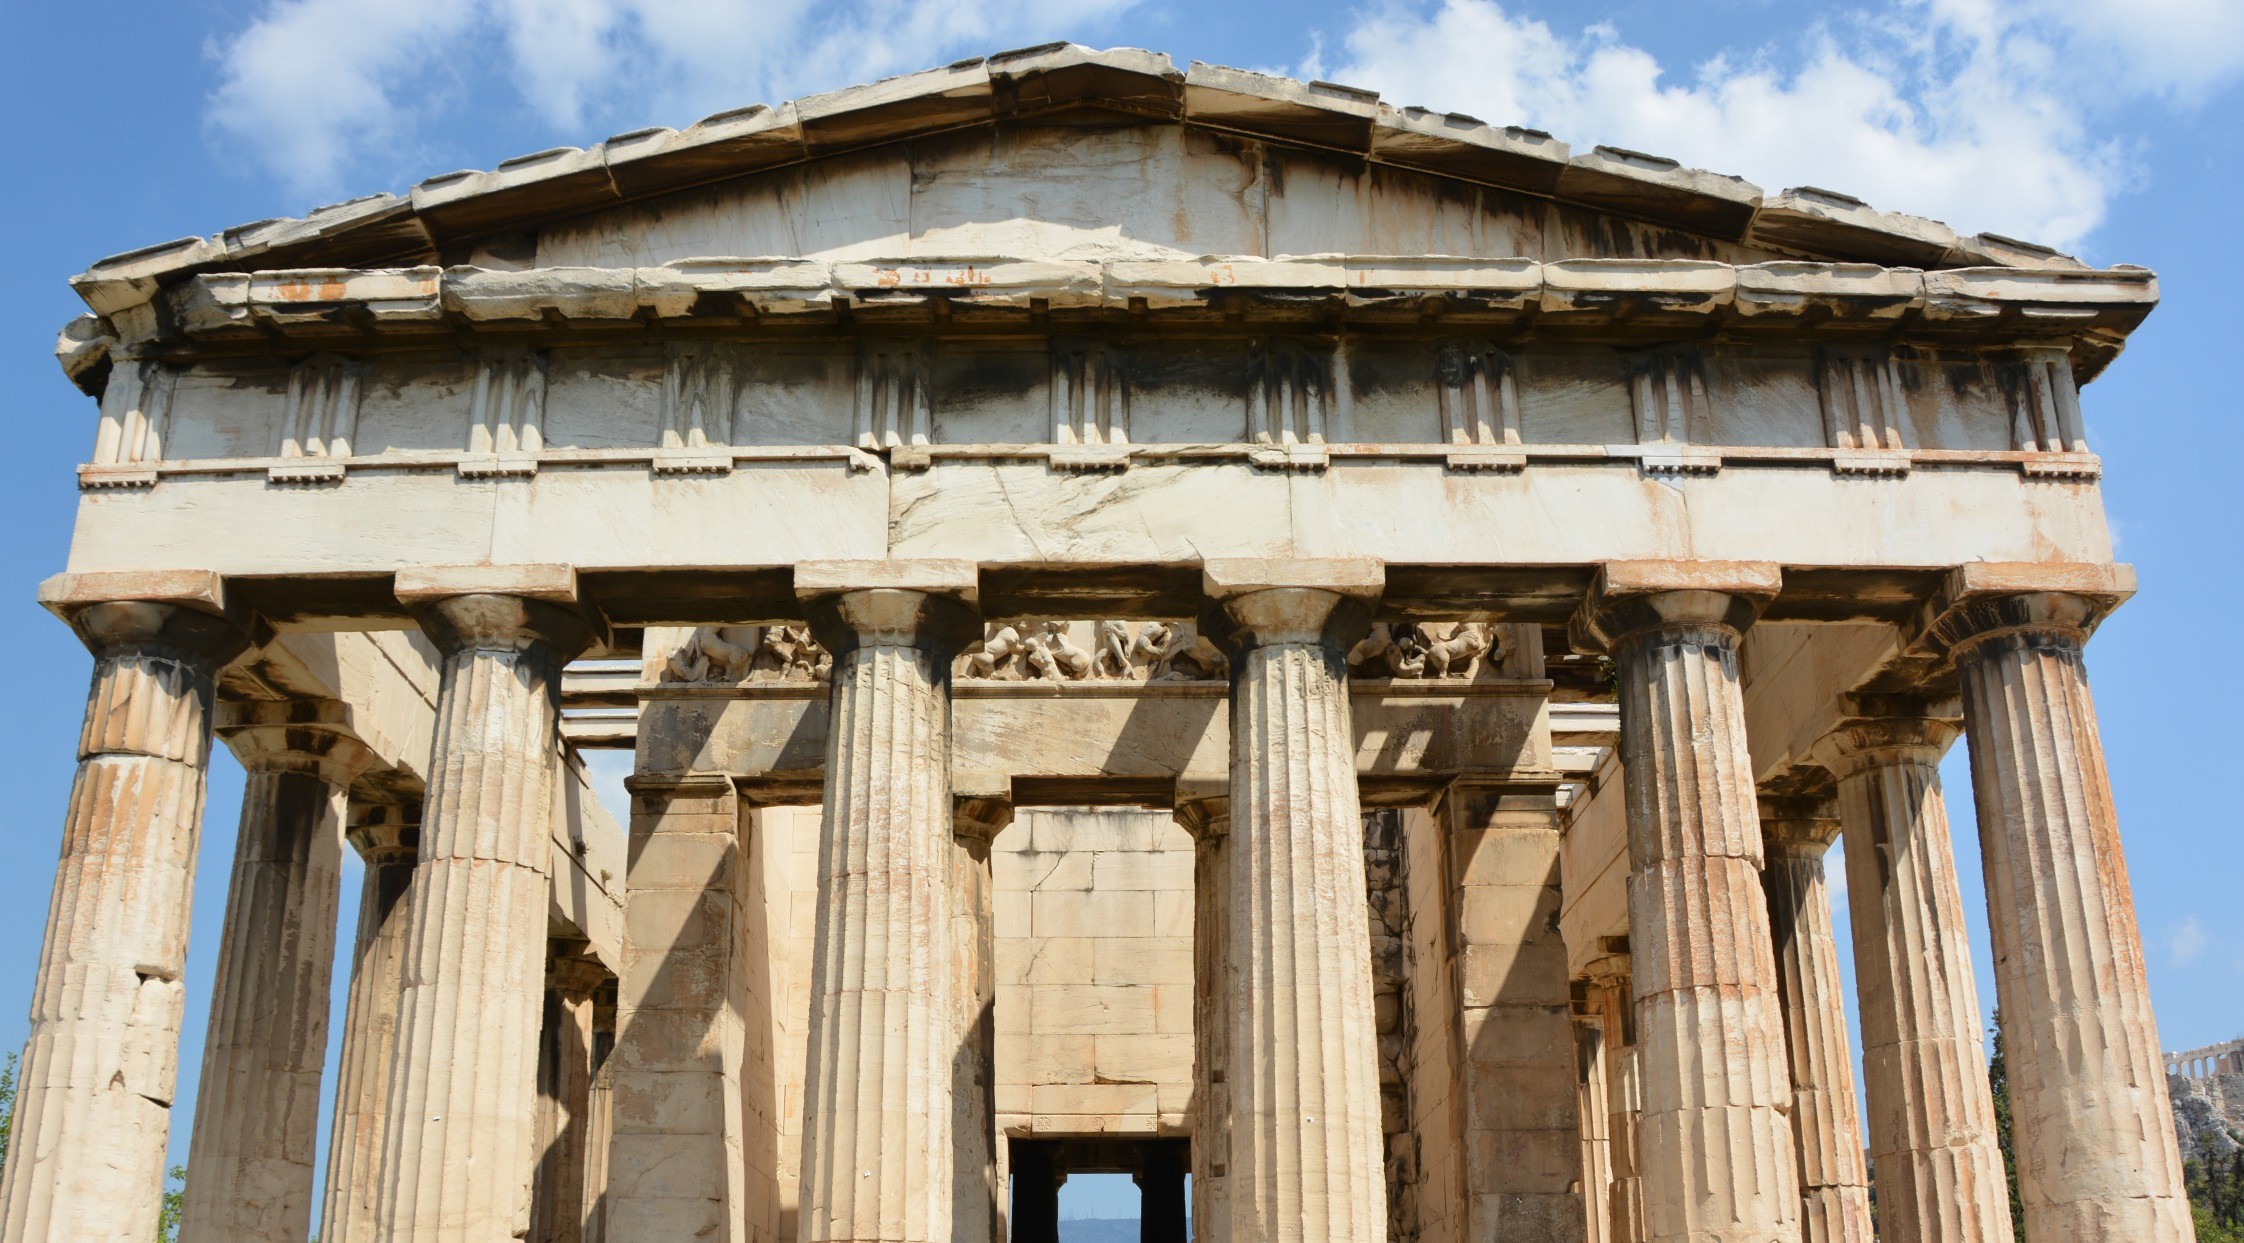 Αρχαιολογία στην Ελλάδα: Μάθημα προπτυχιακού επιπέδου (7.5 ECTS)